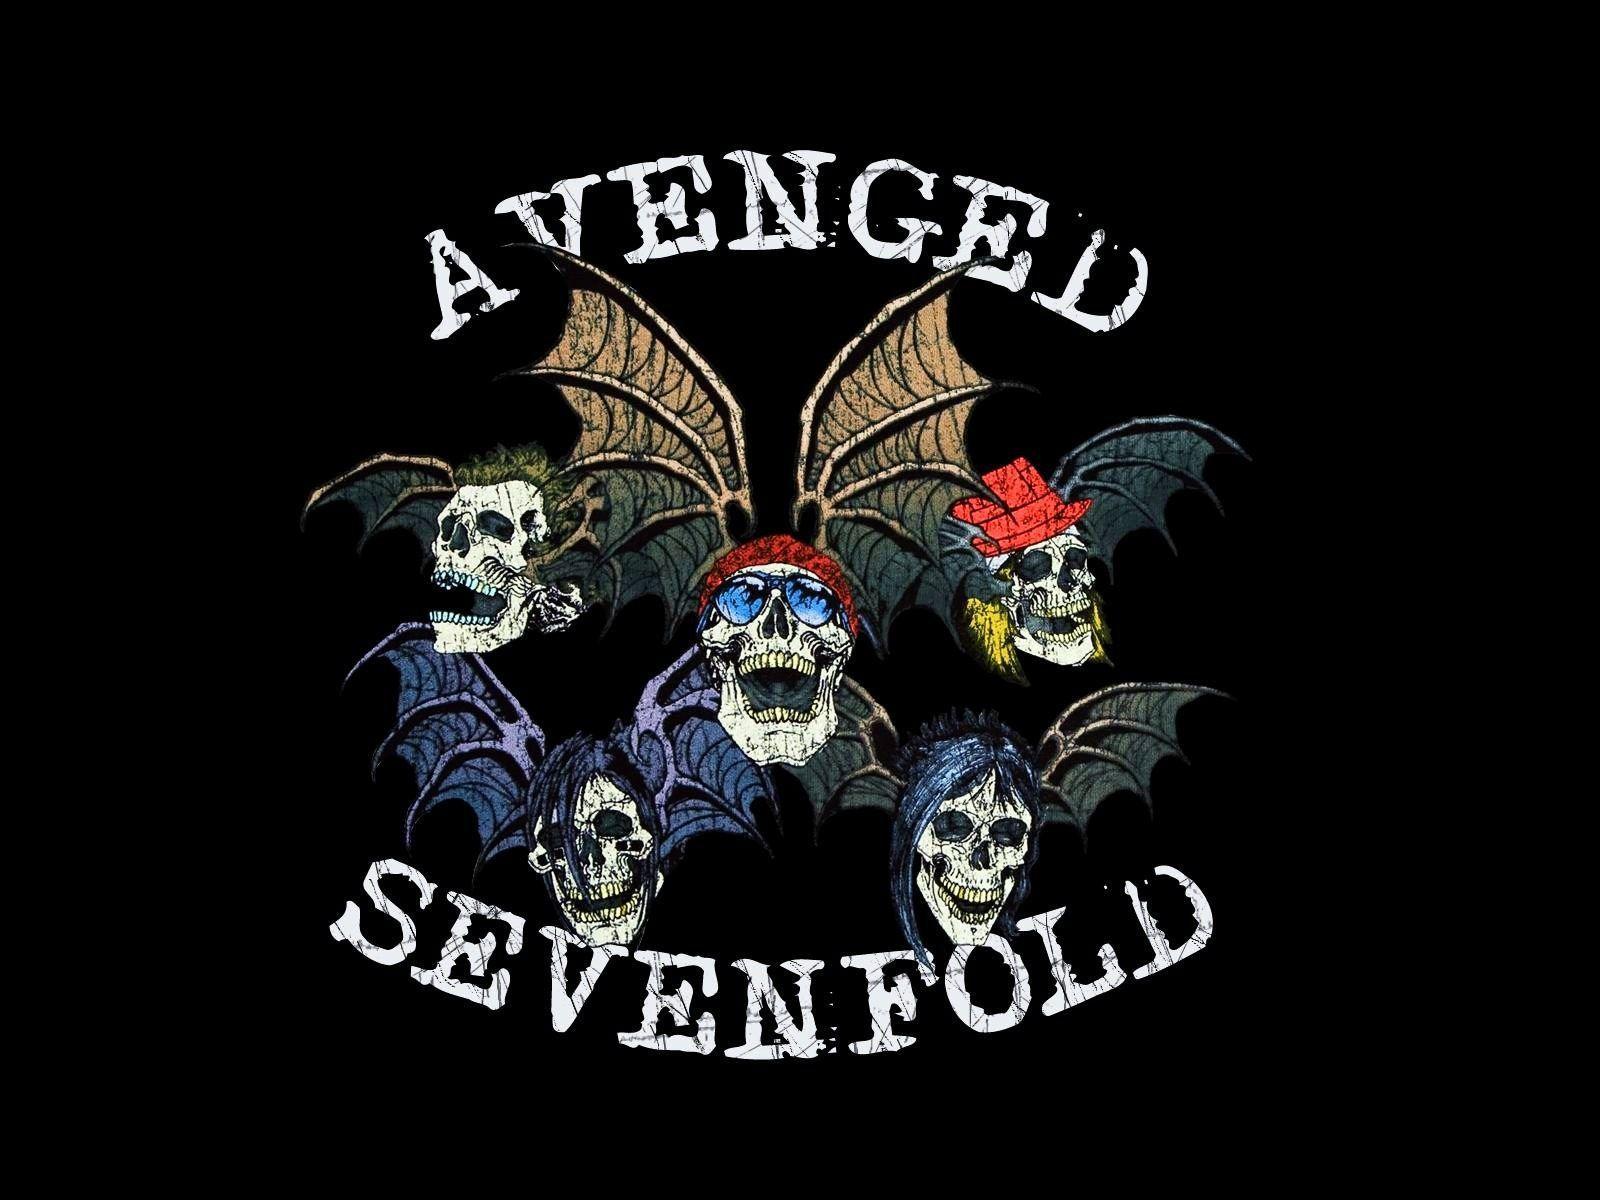 Avenged Sevenfolf Logo - Avenged Sevenfold 2015 Wallpapers - Wallpaper Cave